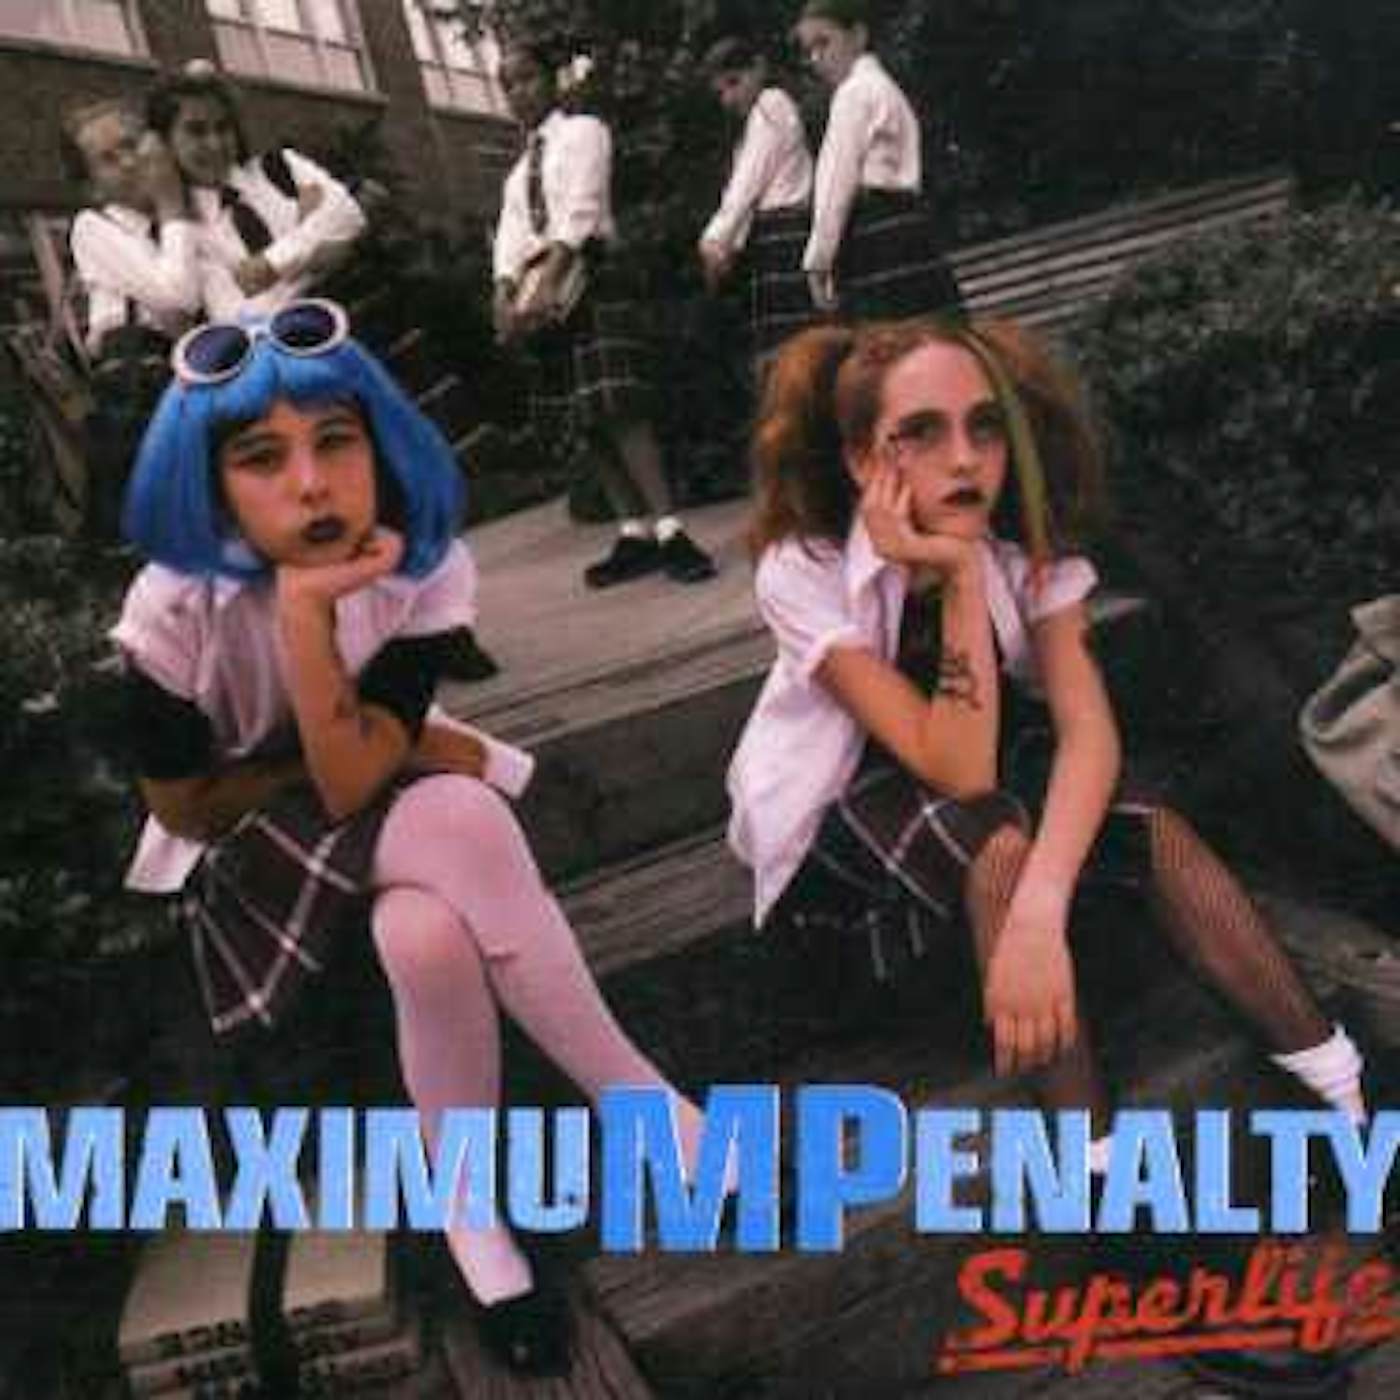 Maximum Penalty SUPERLIFE CD